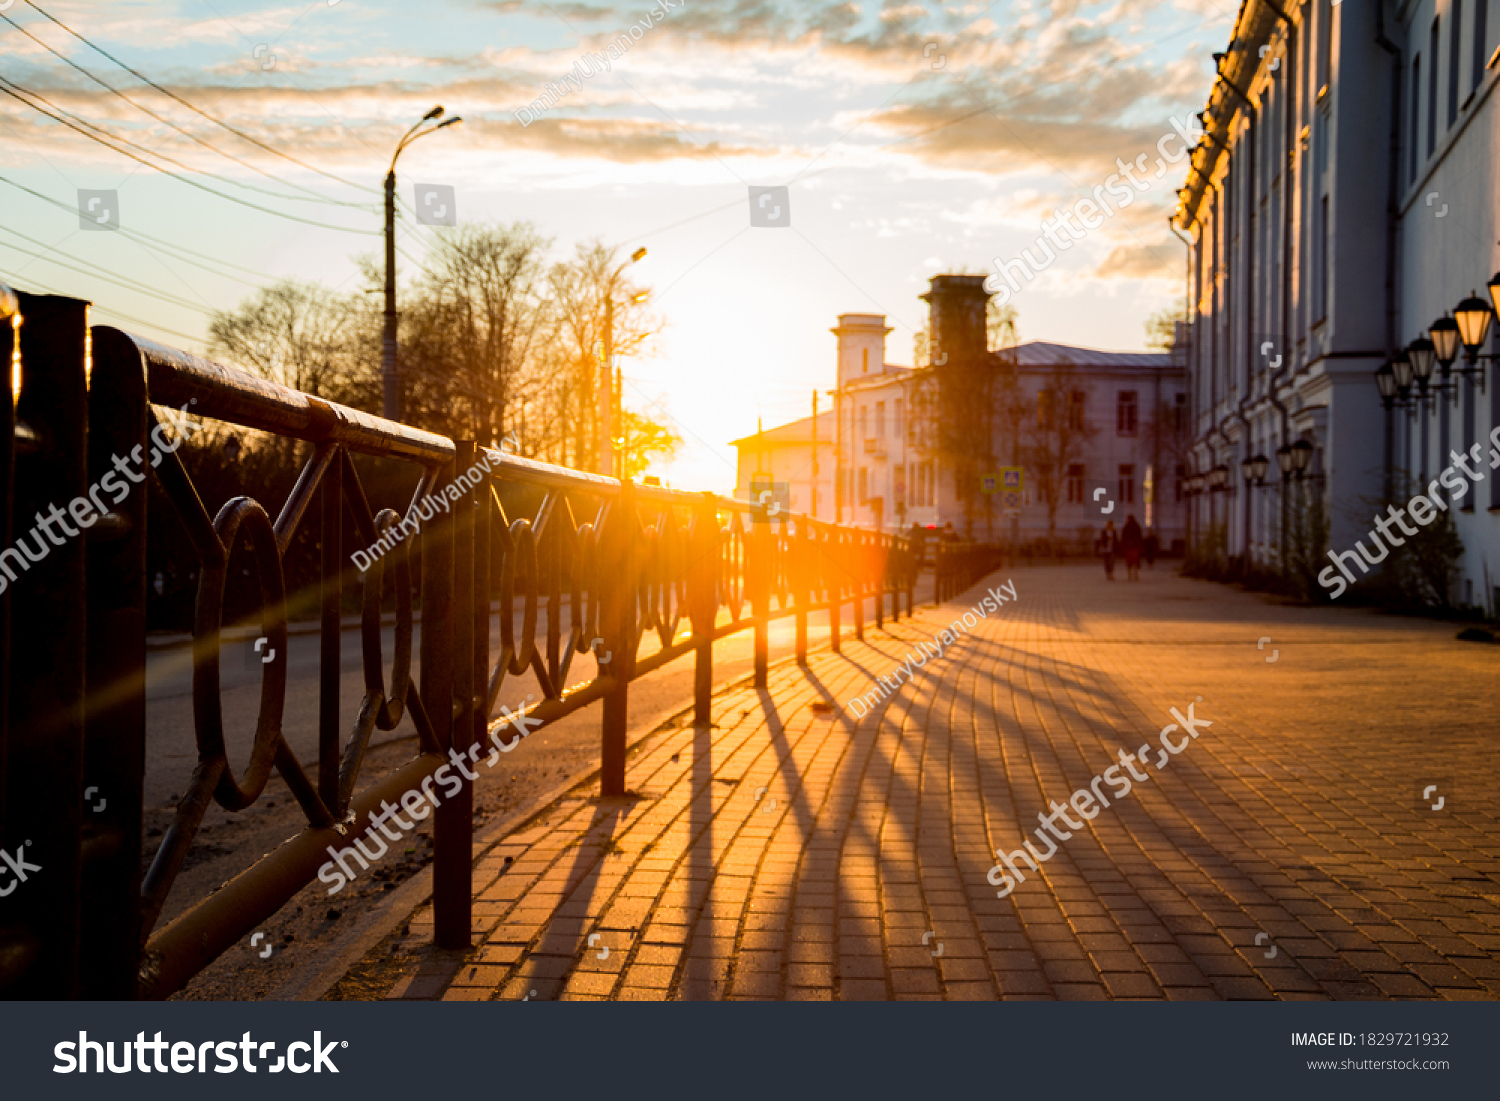 embankment in Arkhangelsk at sunset #1829721932